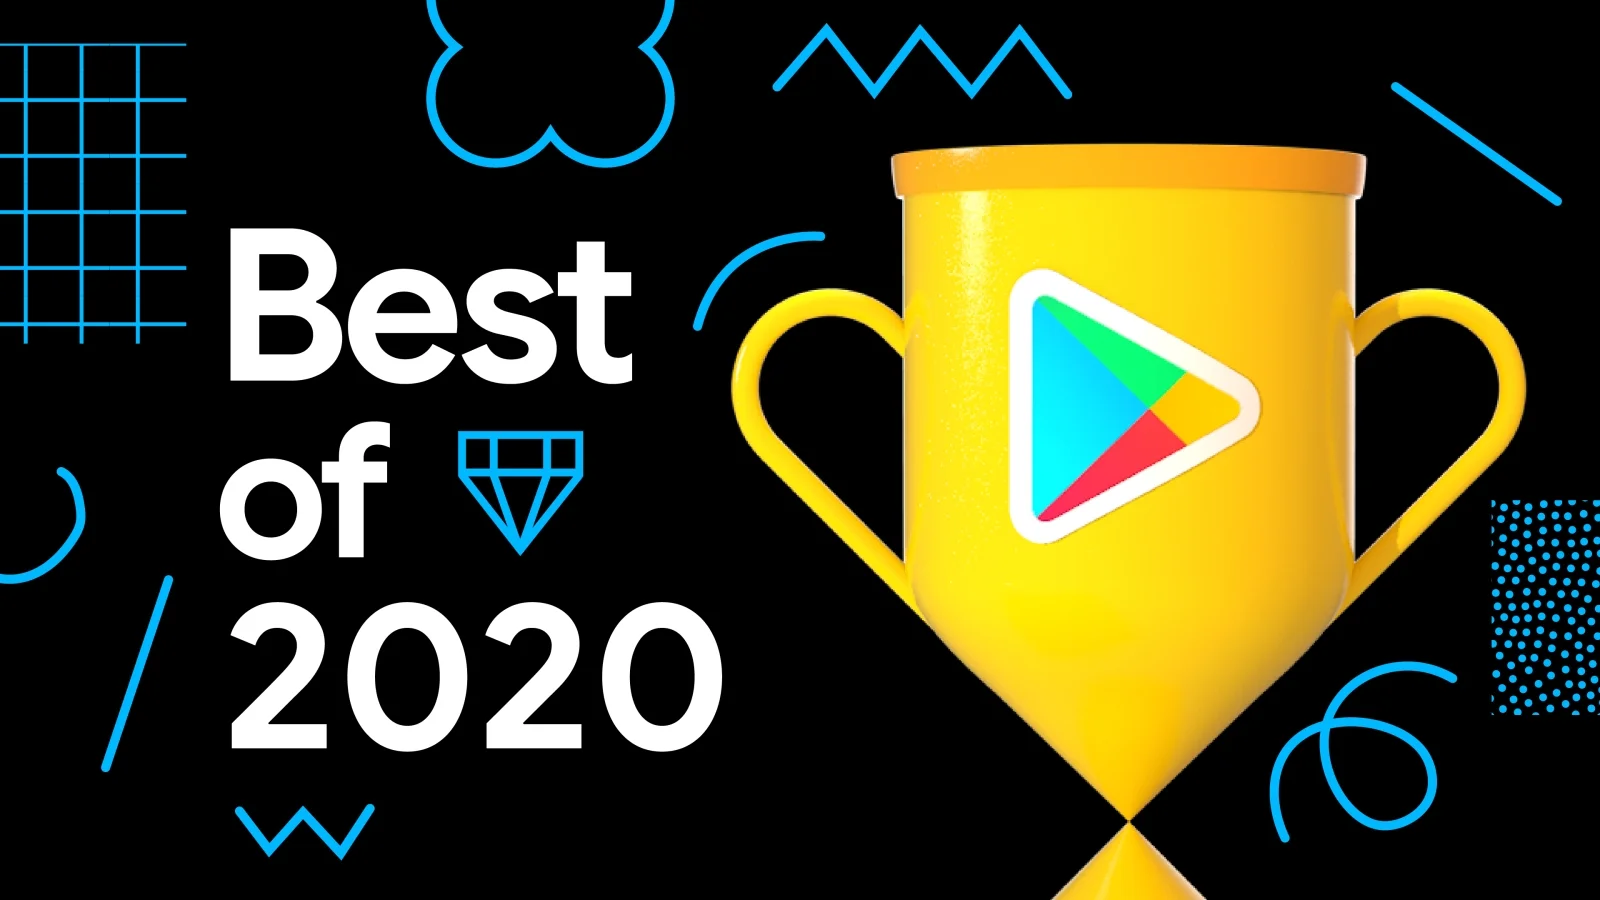 Названы лучшие Android-игры и приложения 2020 года - фото 1